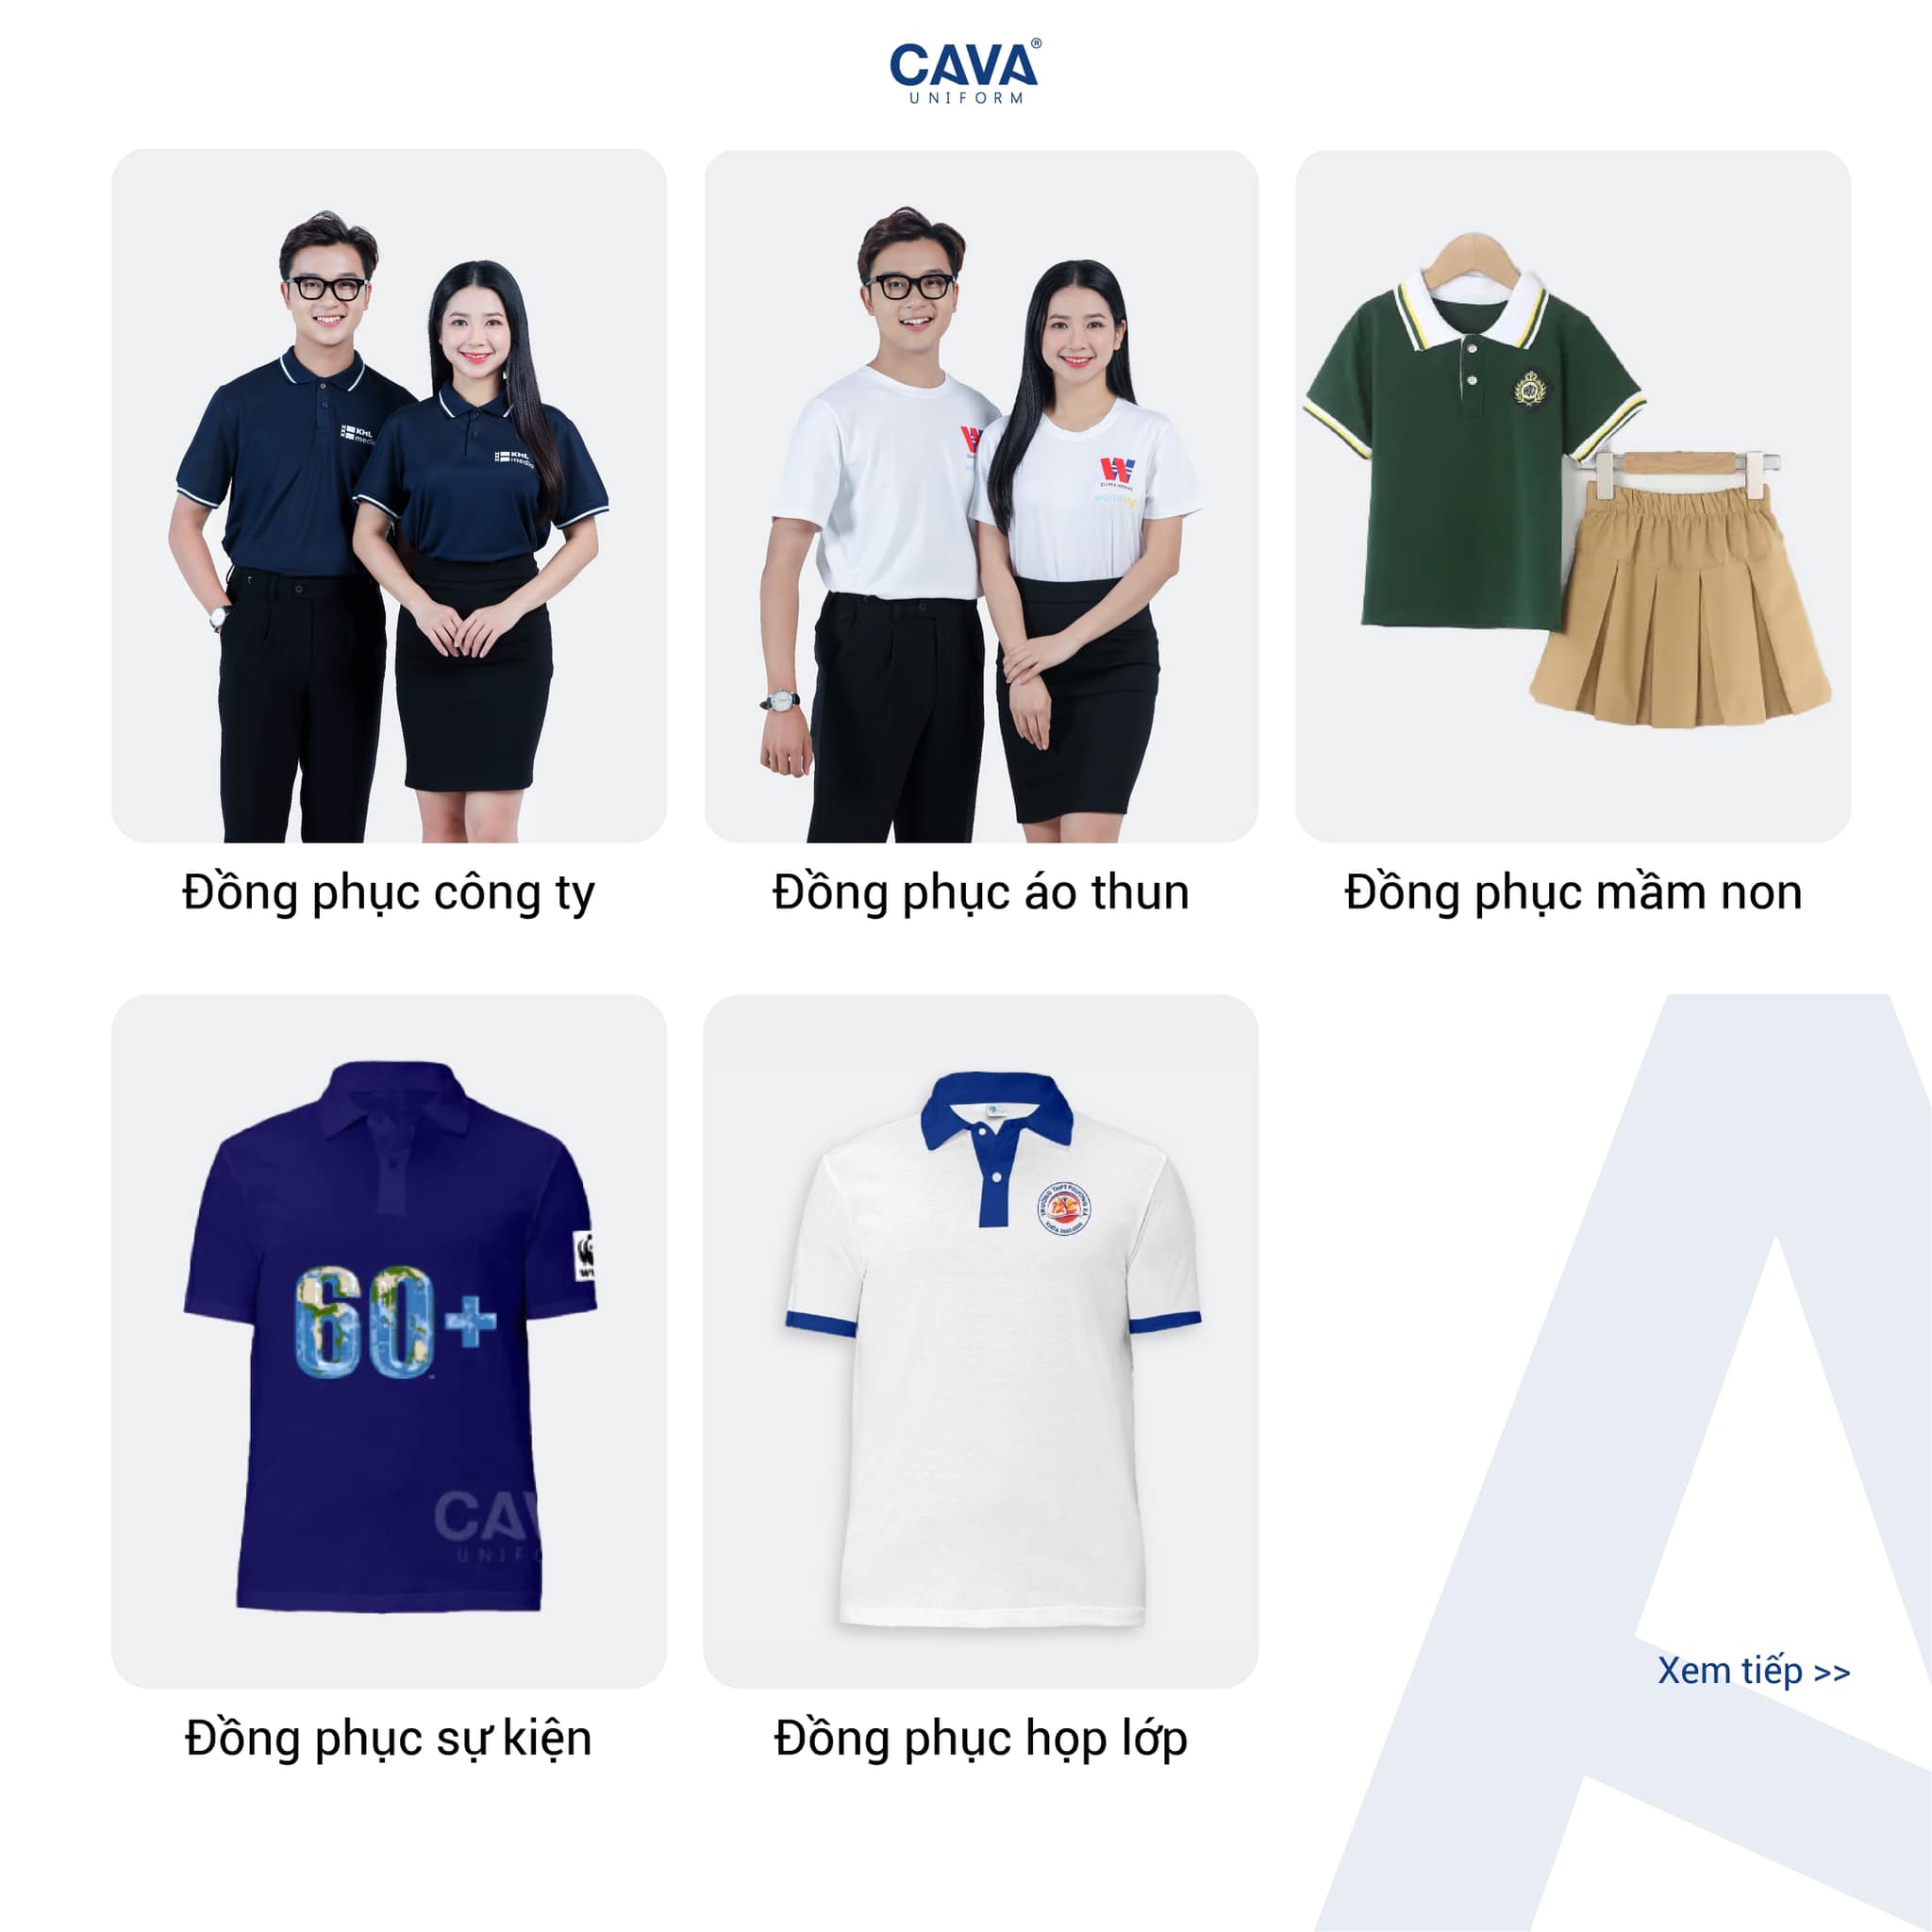 10 dòng sản phẩm đồng phục nổi bật tại CAVA Uniform